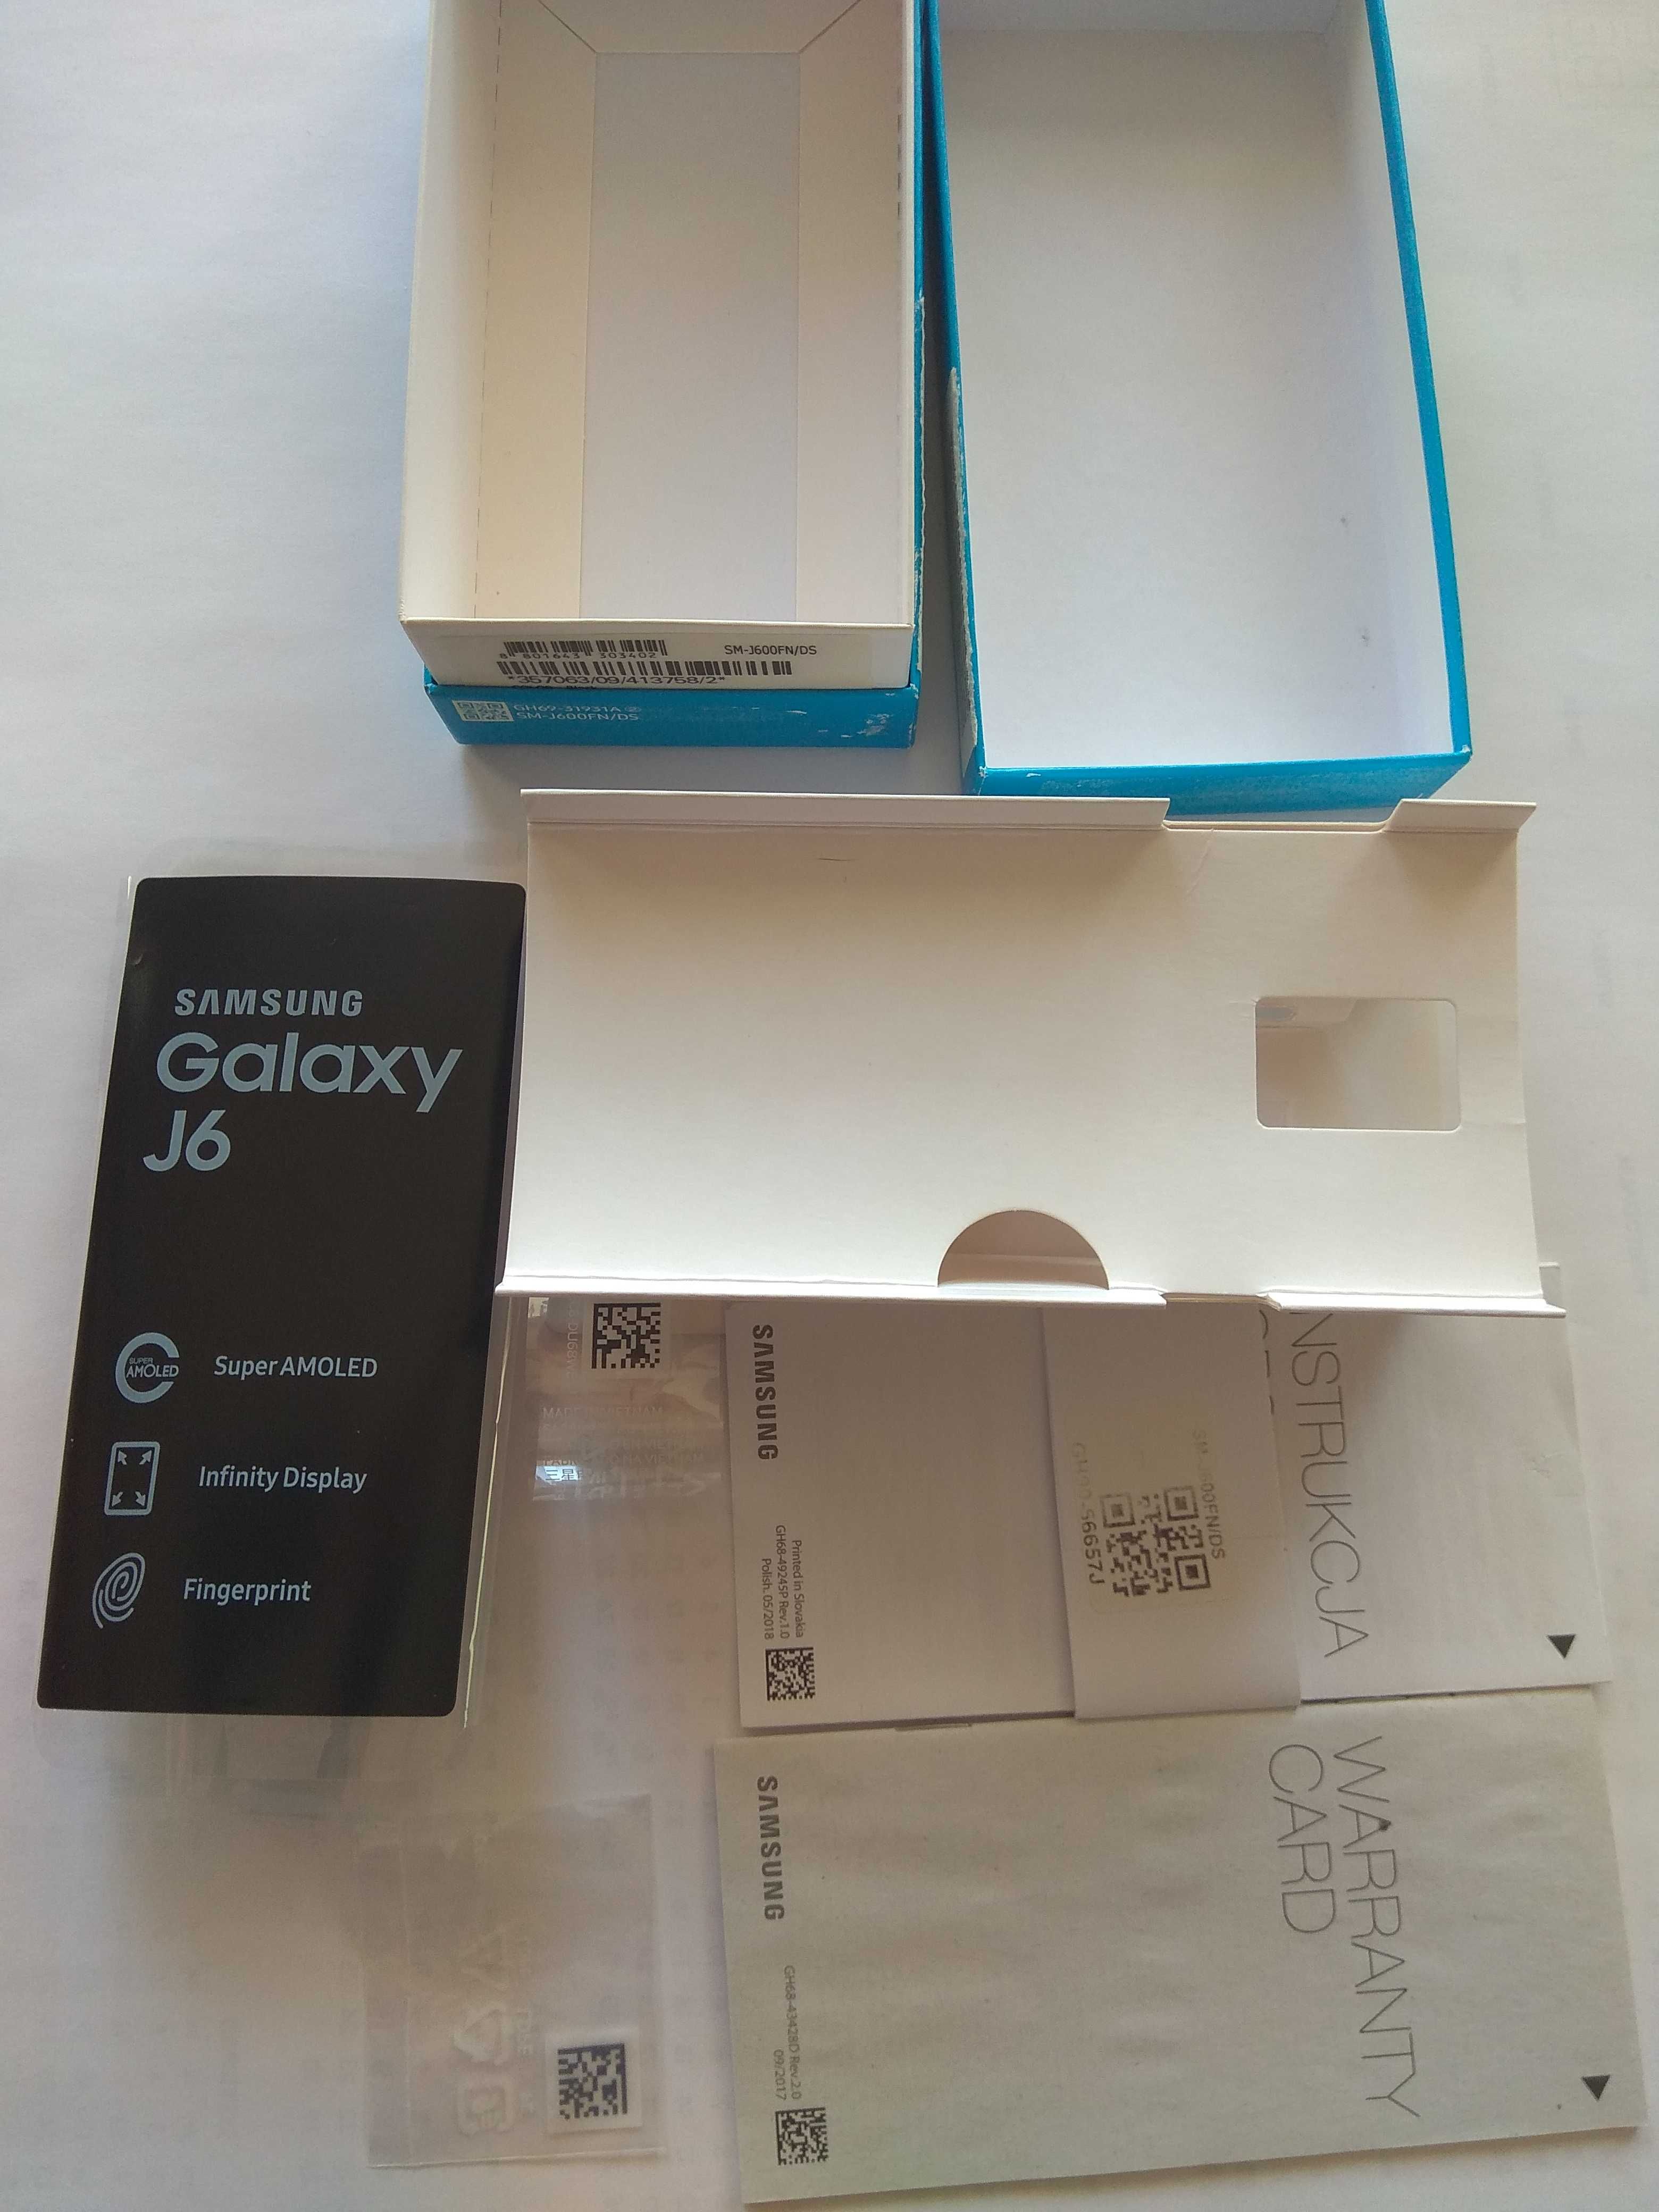 Samsung Galaxy J6 pudełko do telefonu z wytłoczką foliami instrukcjami